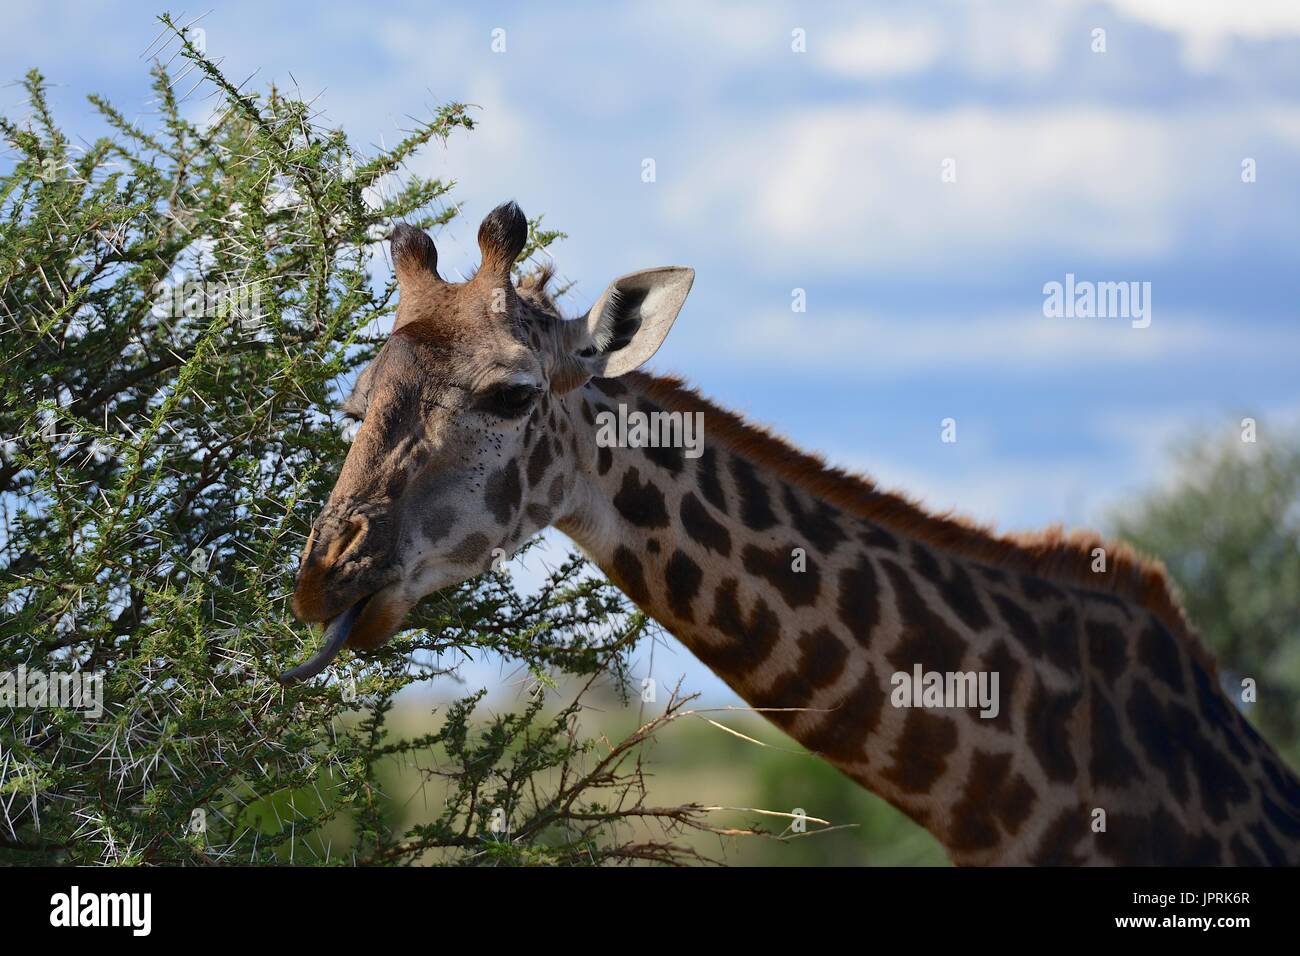 Les Girafes broutent la savane du parc national de Serengeti de Tanzanie, Afrique. Banque D'Images